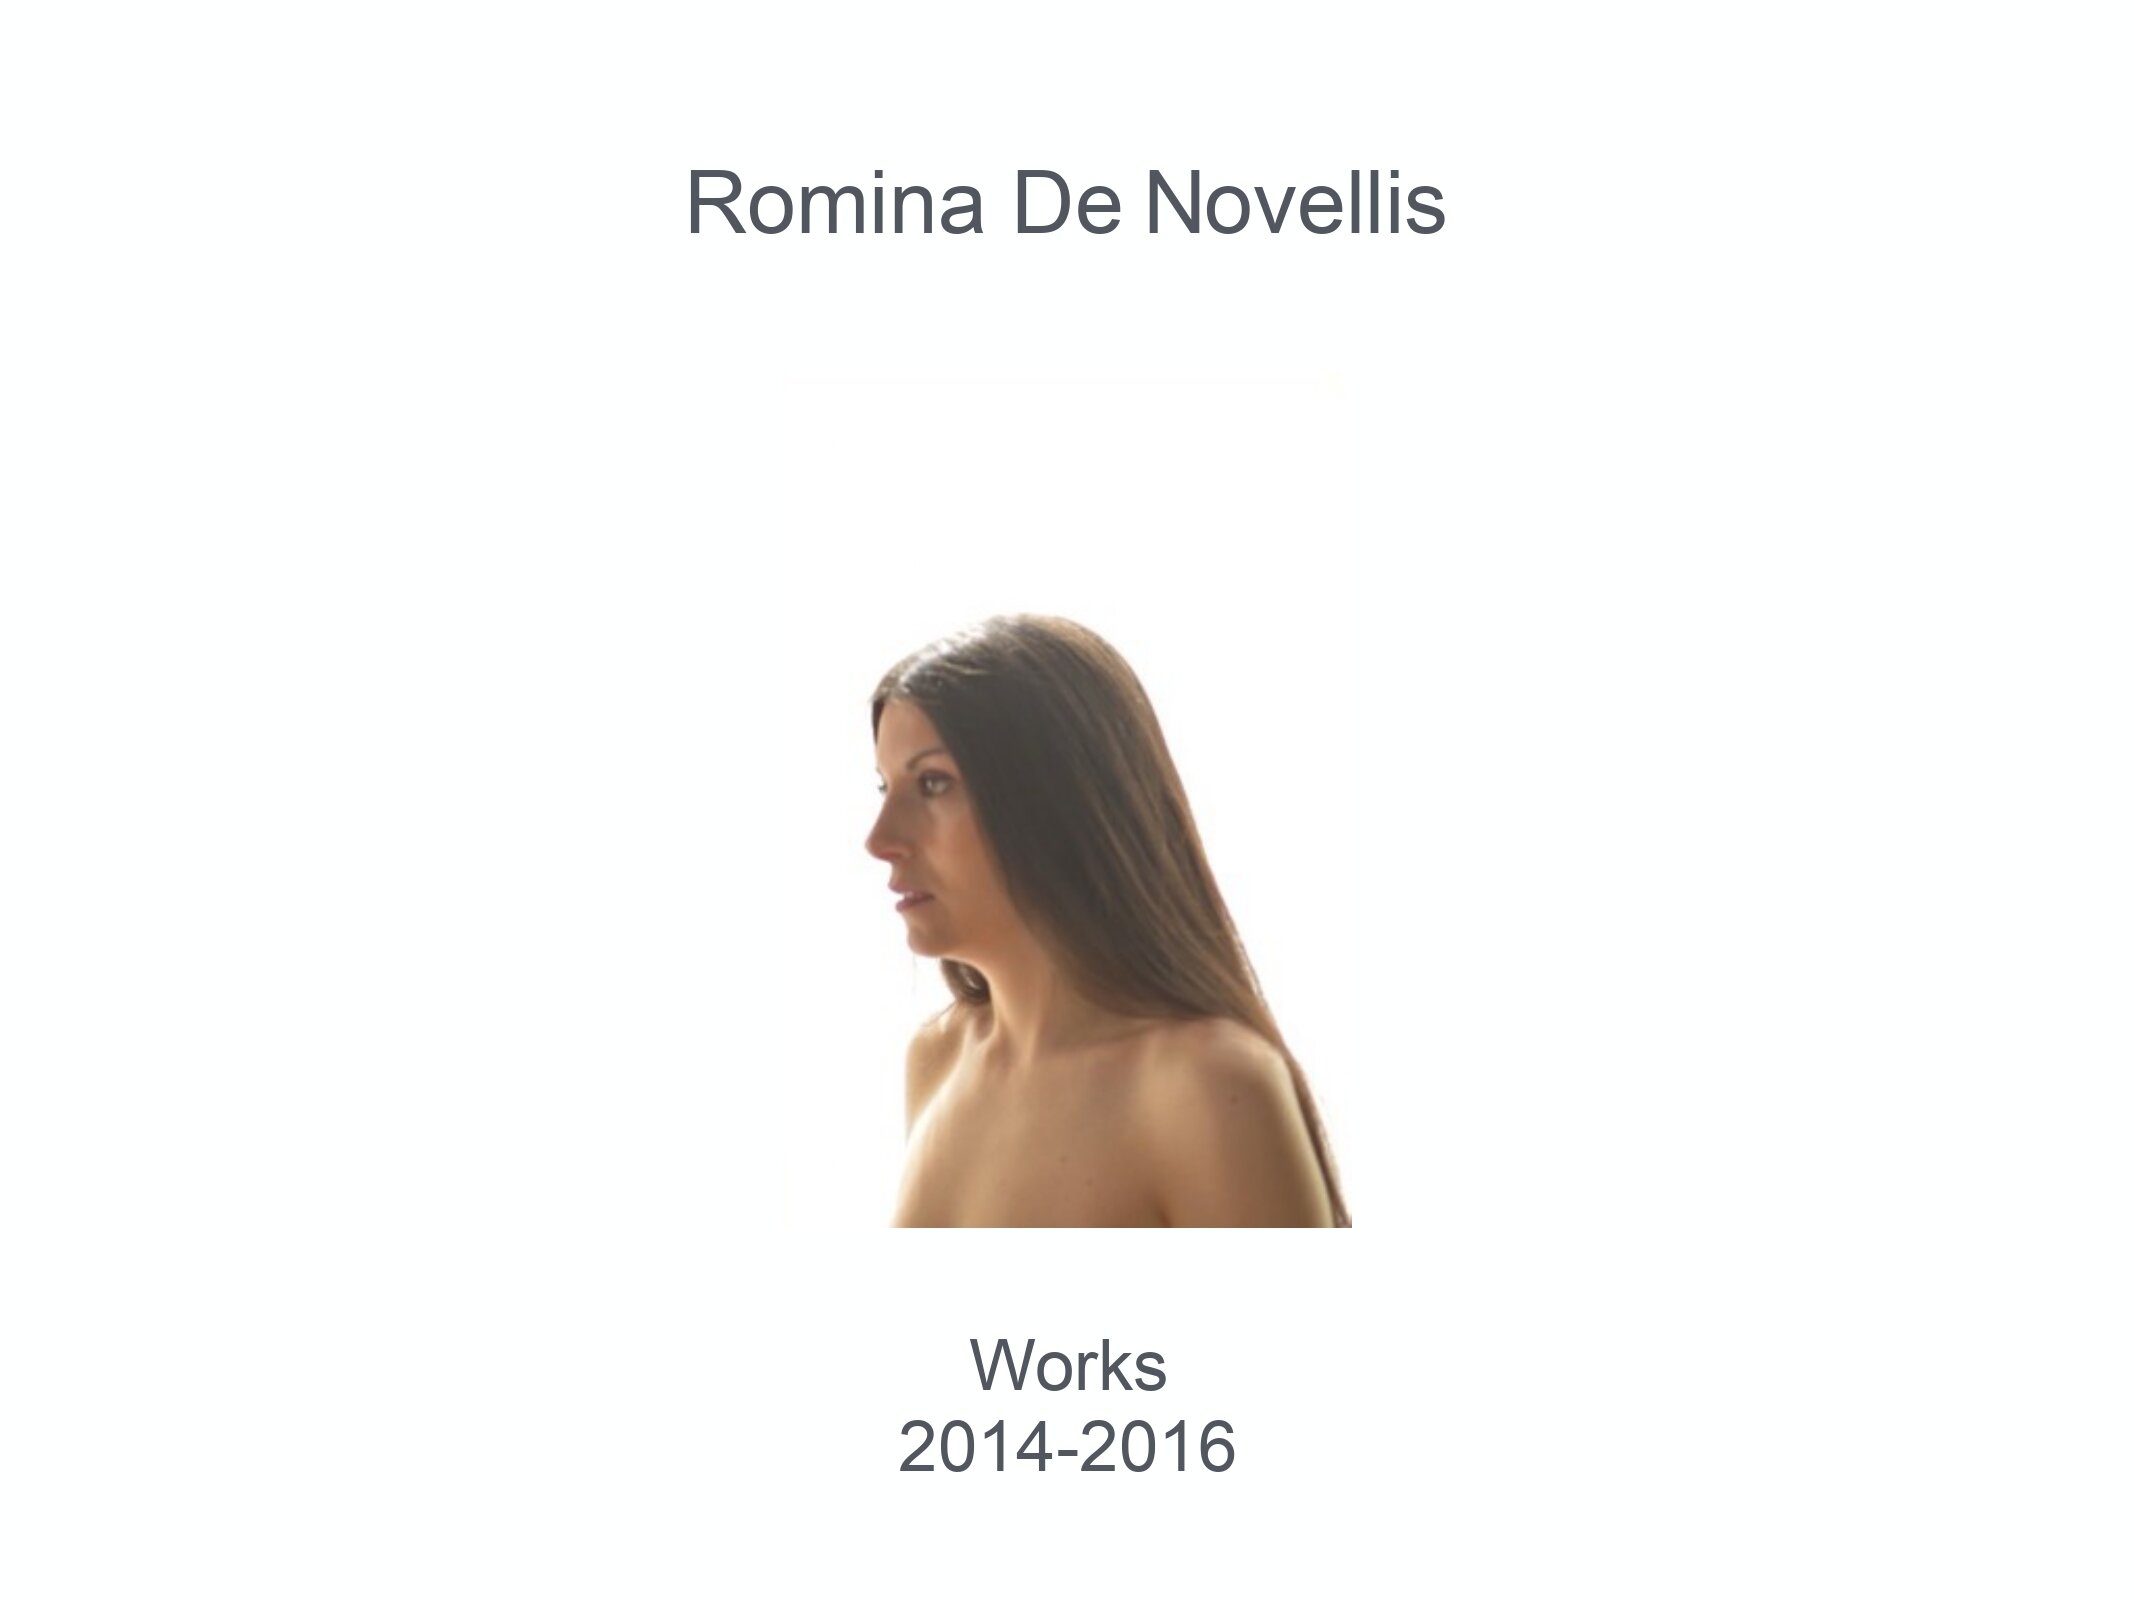 Romina 2014 - 2016 Dernière version _page-0001.jpg